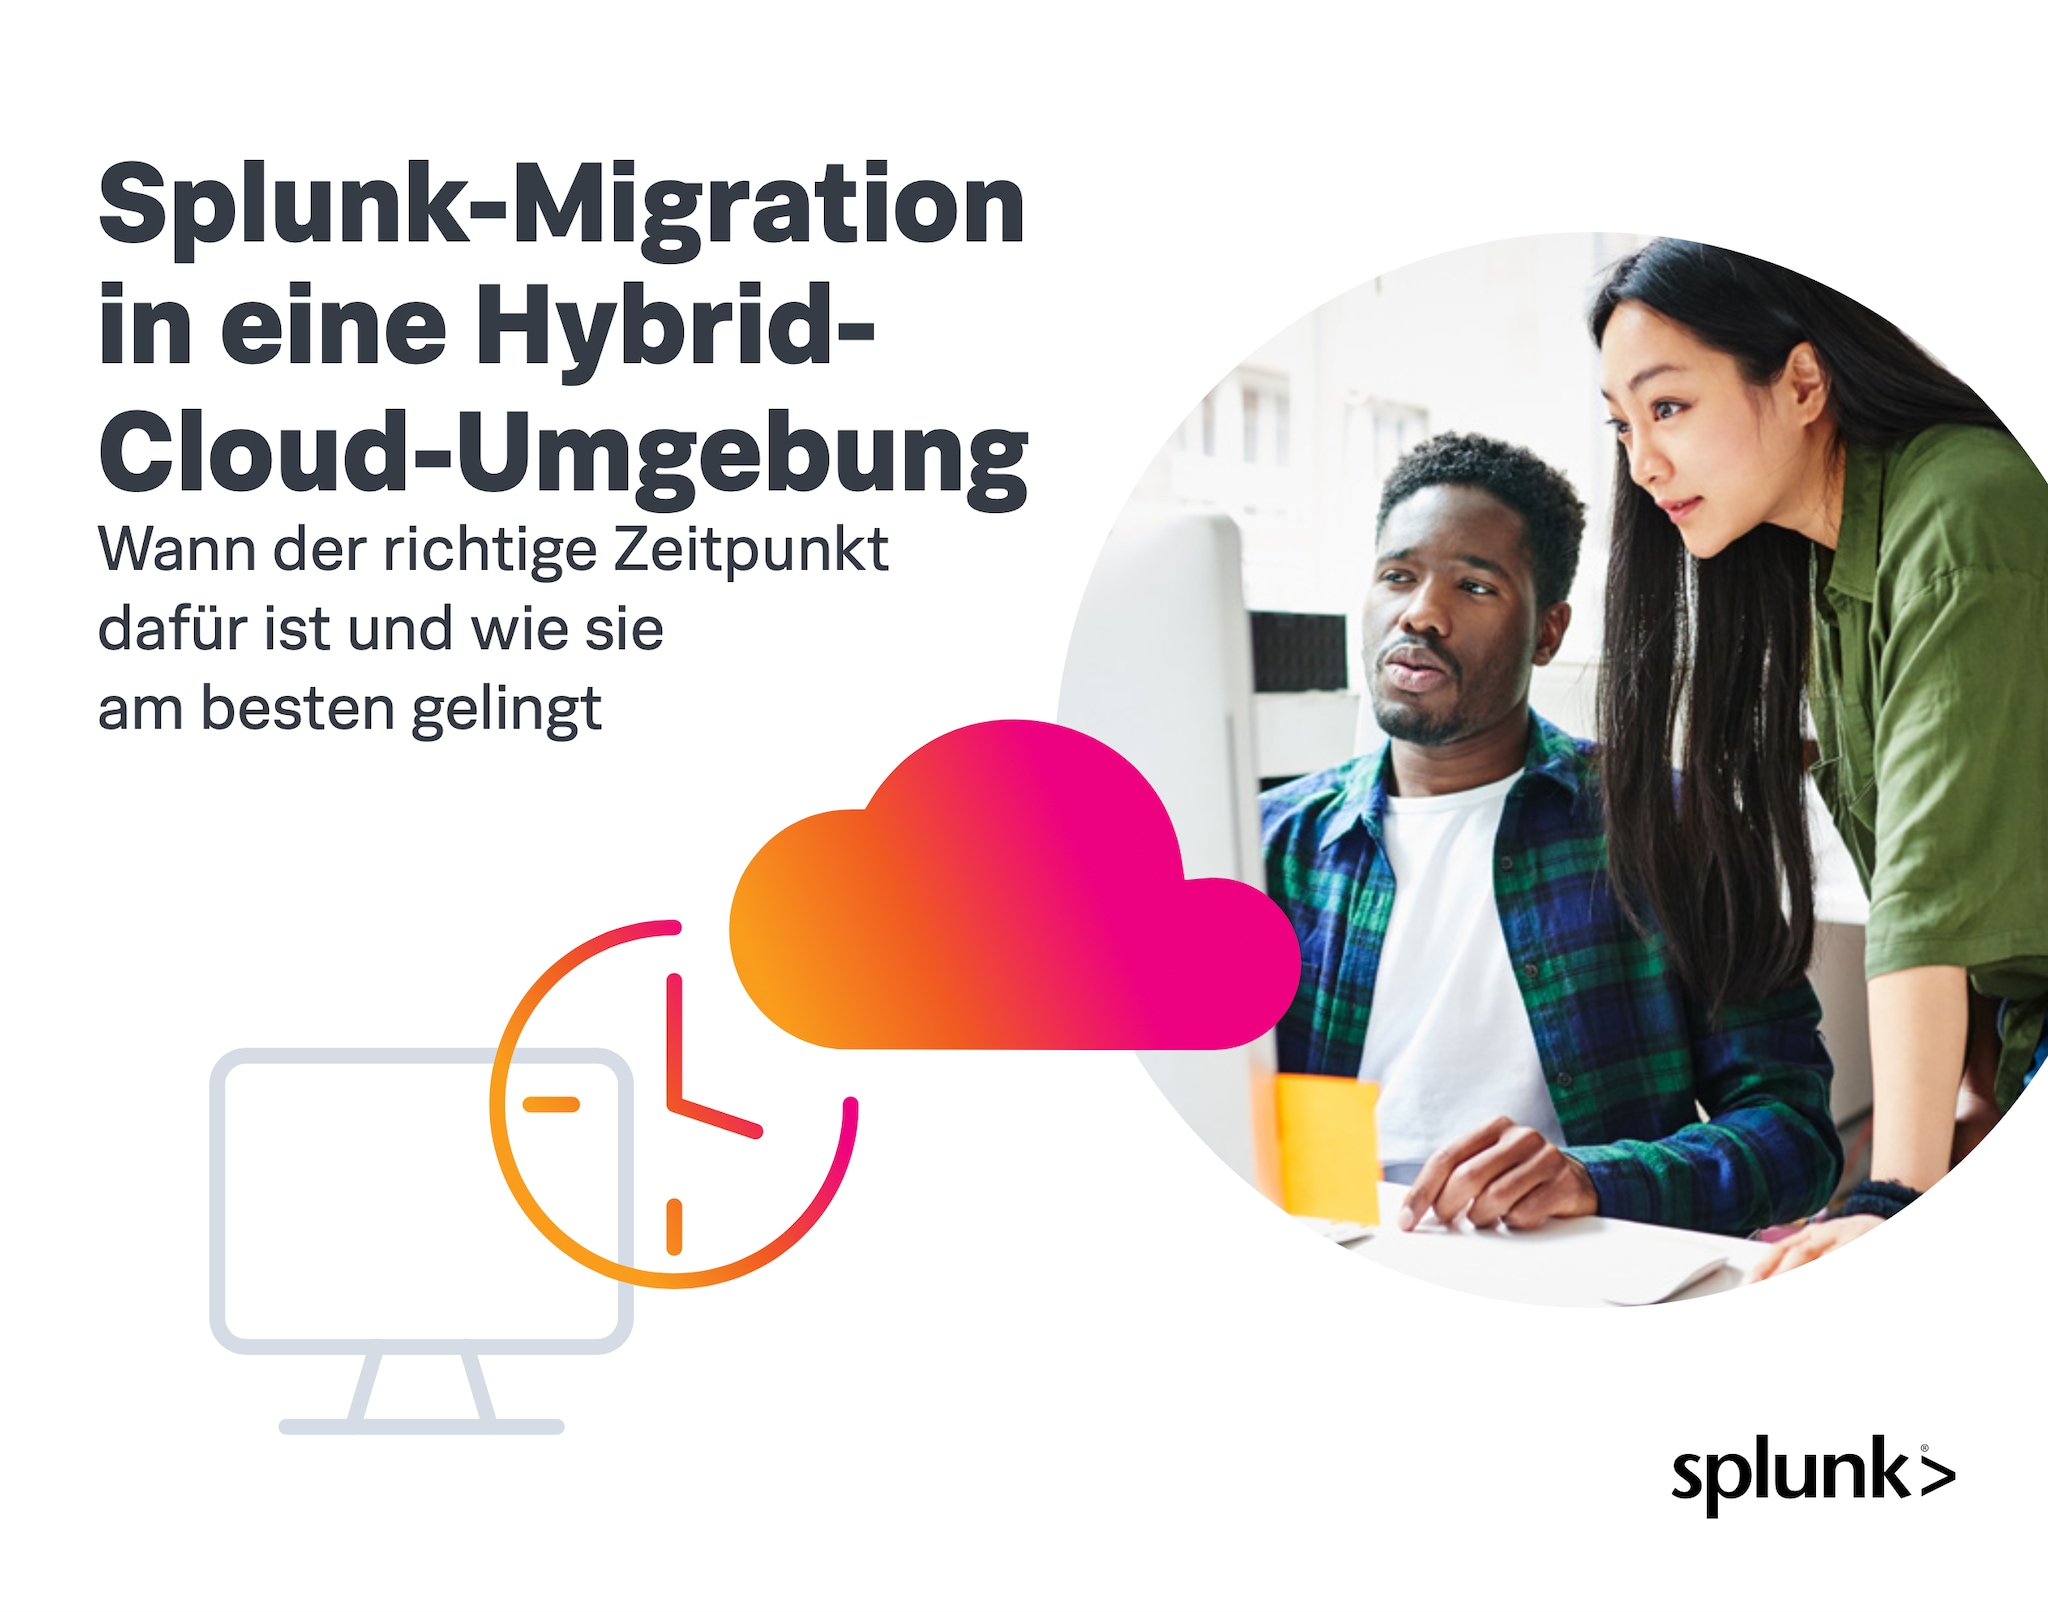 Splunk-Migration in eine Hybrid-Cloud-Umgebung: Wann der richtige Zeitpunkt dafür ist und wie sie am besten gelingt